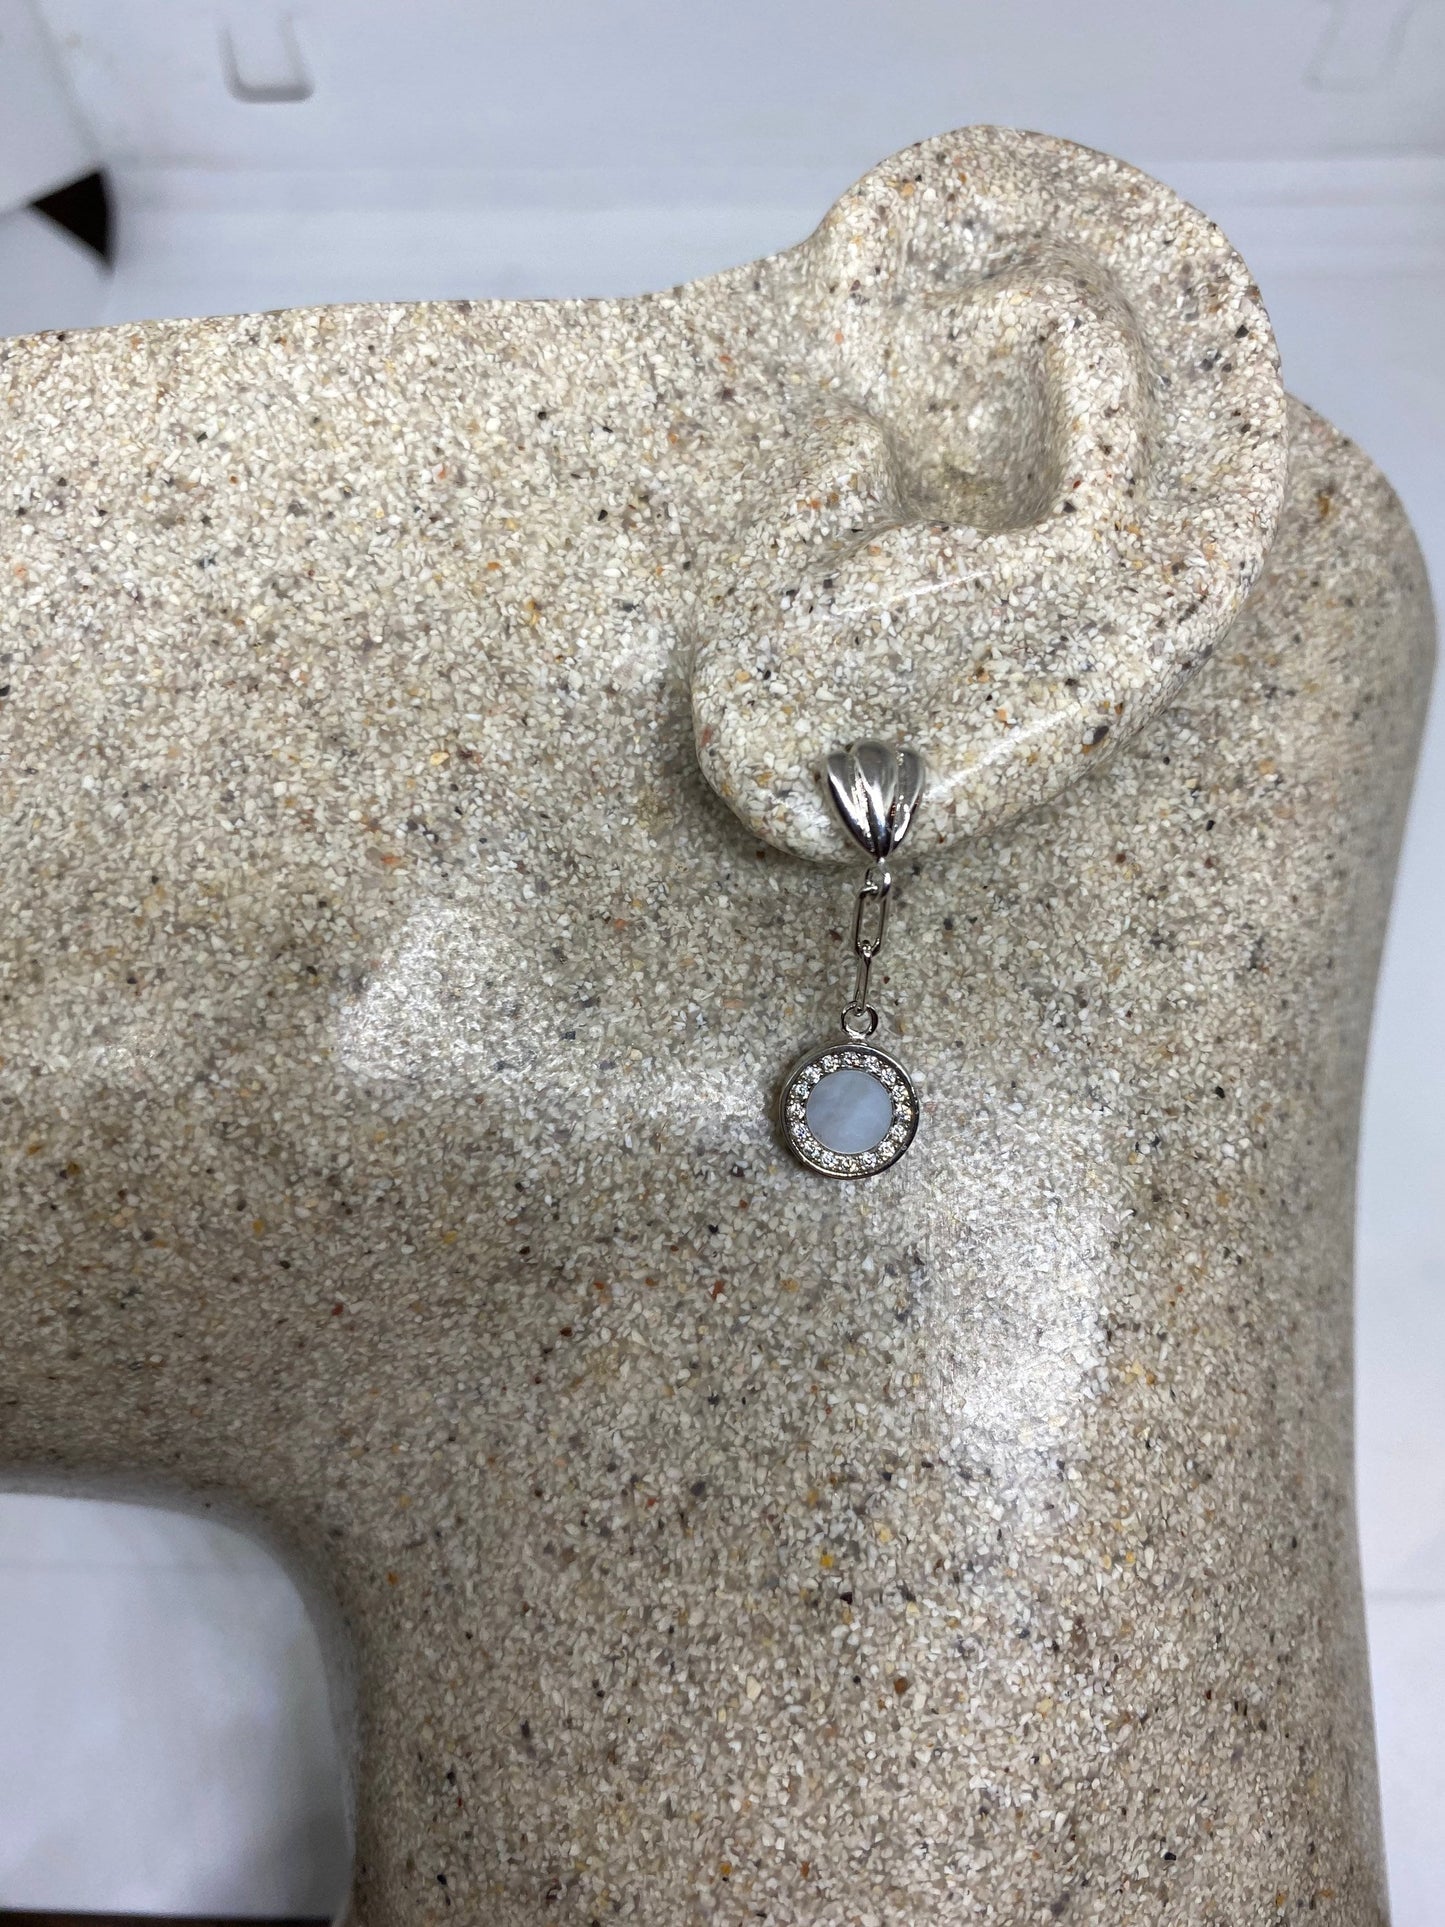 Vintage Genuine Mother of Pearl 925 Sterling Silver dangle earrings